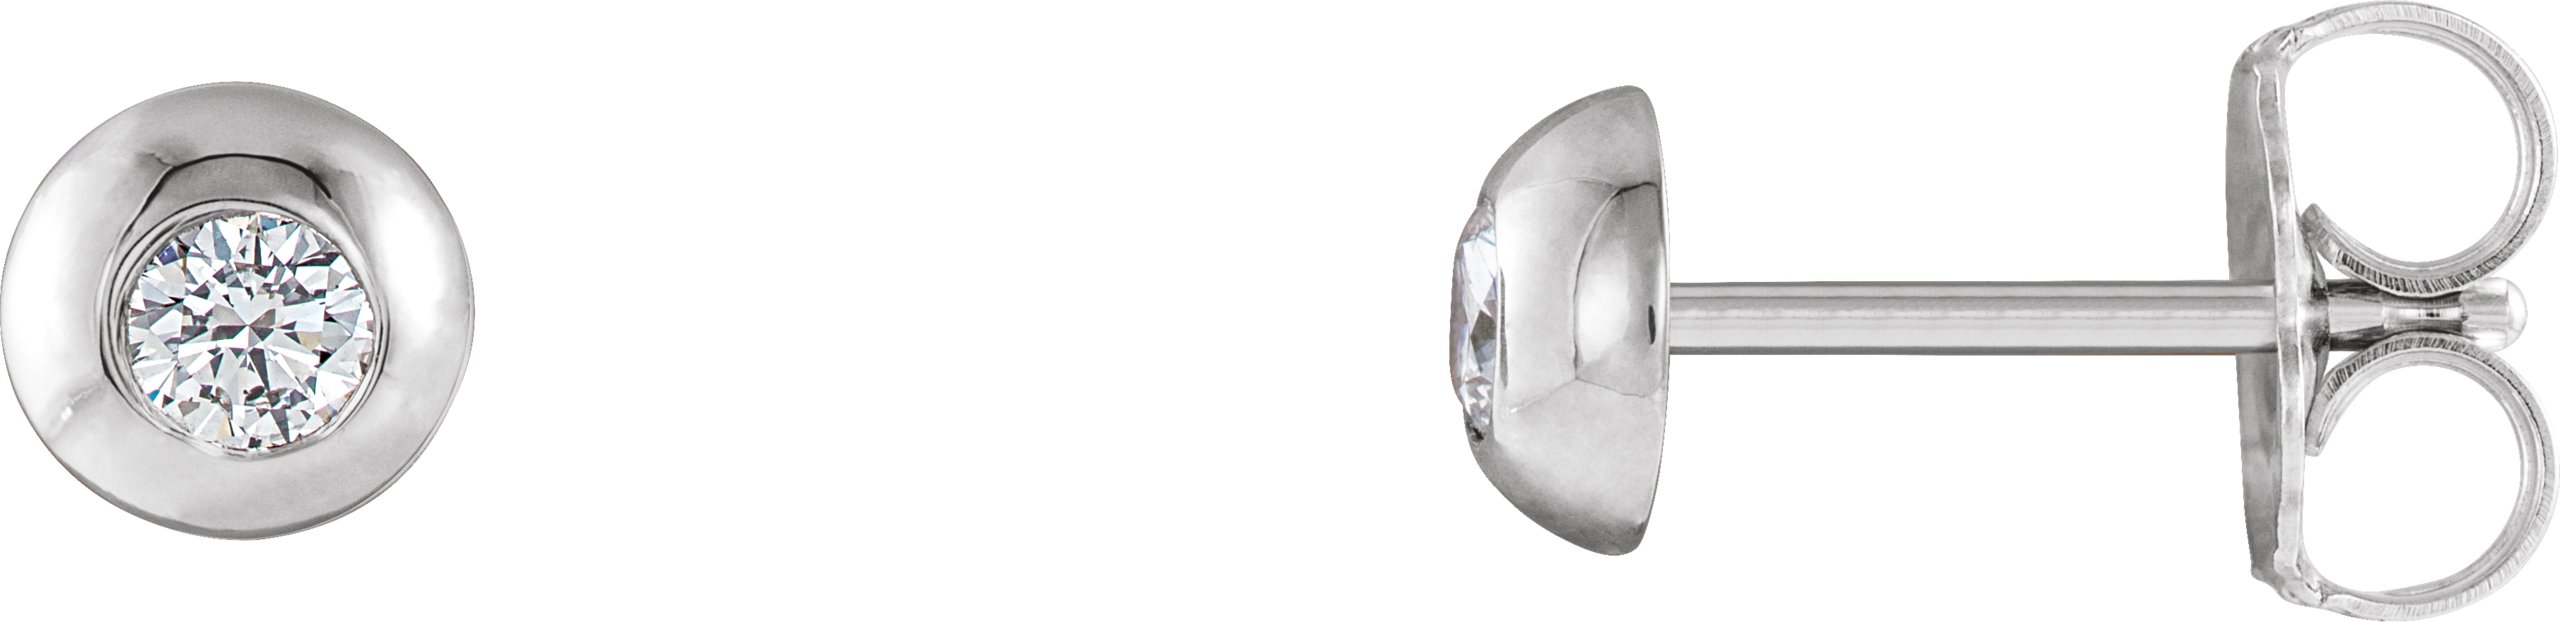 14K White 1/3 CTW Natural Diamond Domed Stud Earring